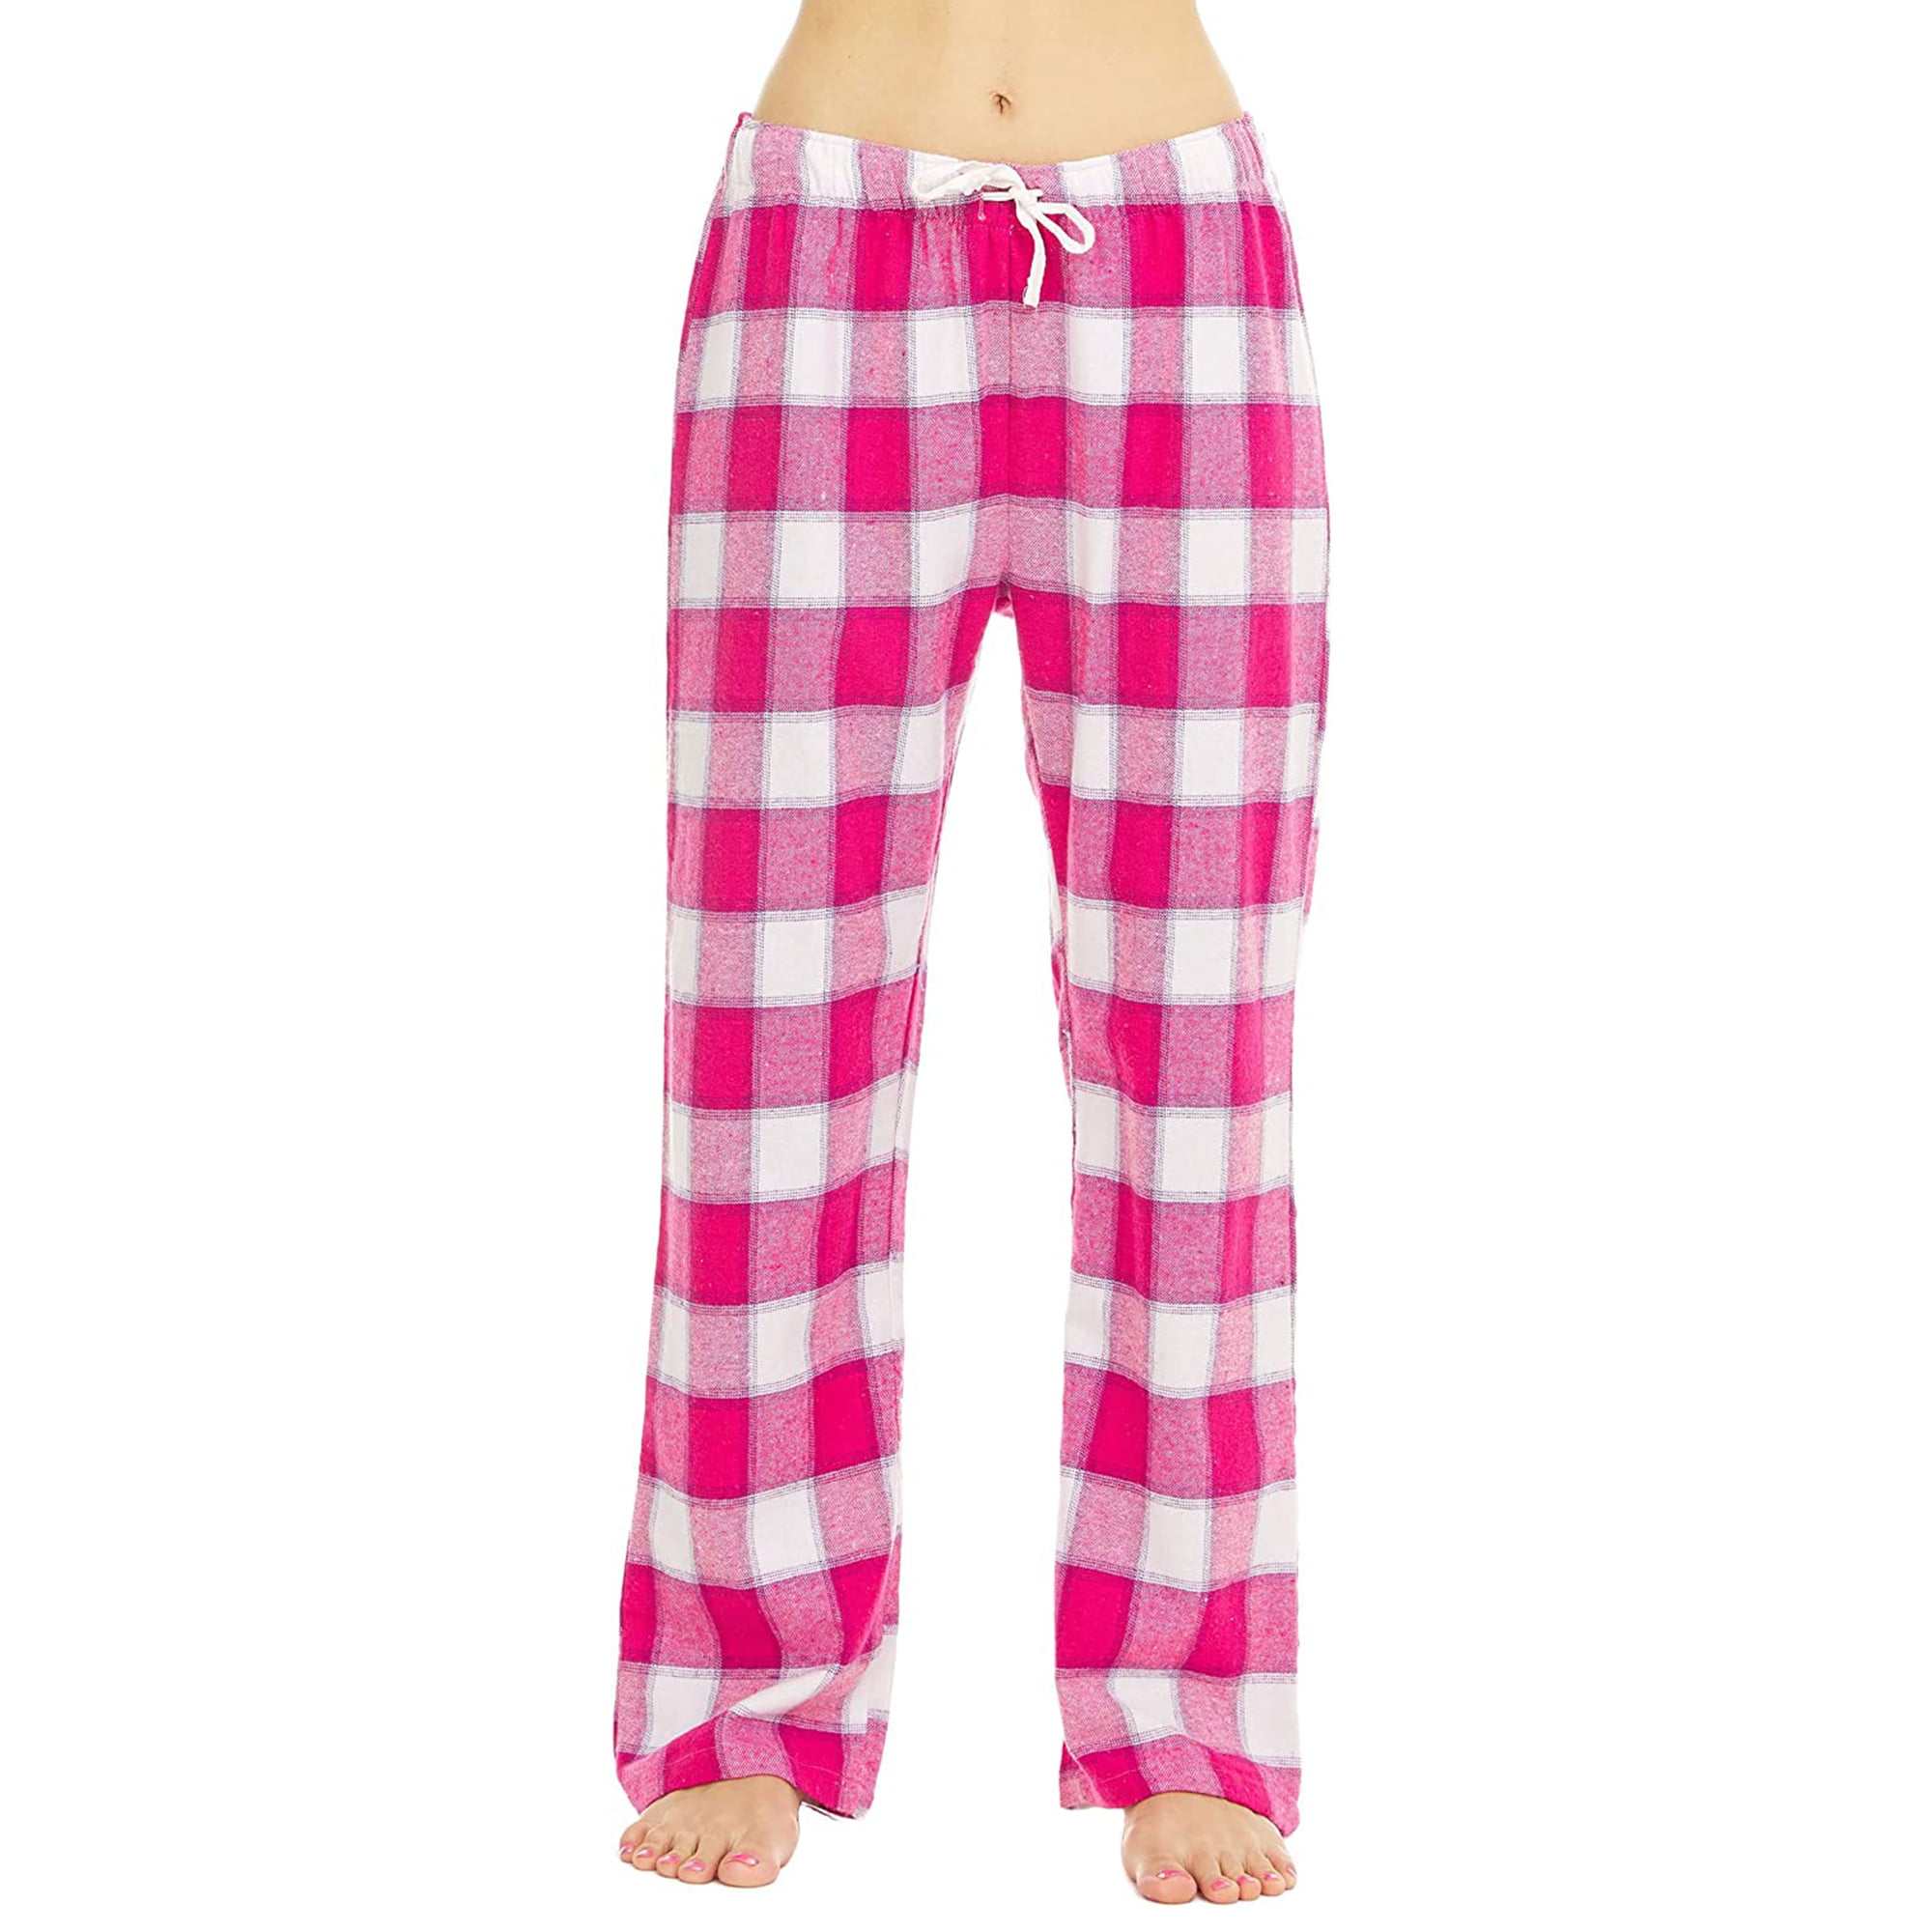 Active Club Women's Flannel Pajama Pants Cotton Blend Fuzzy PJ Pants ...